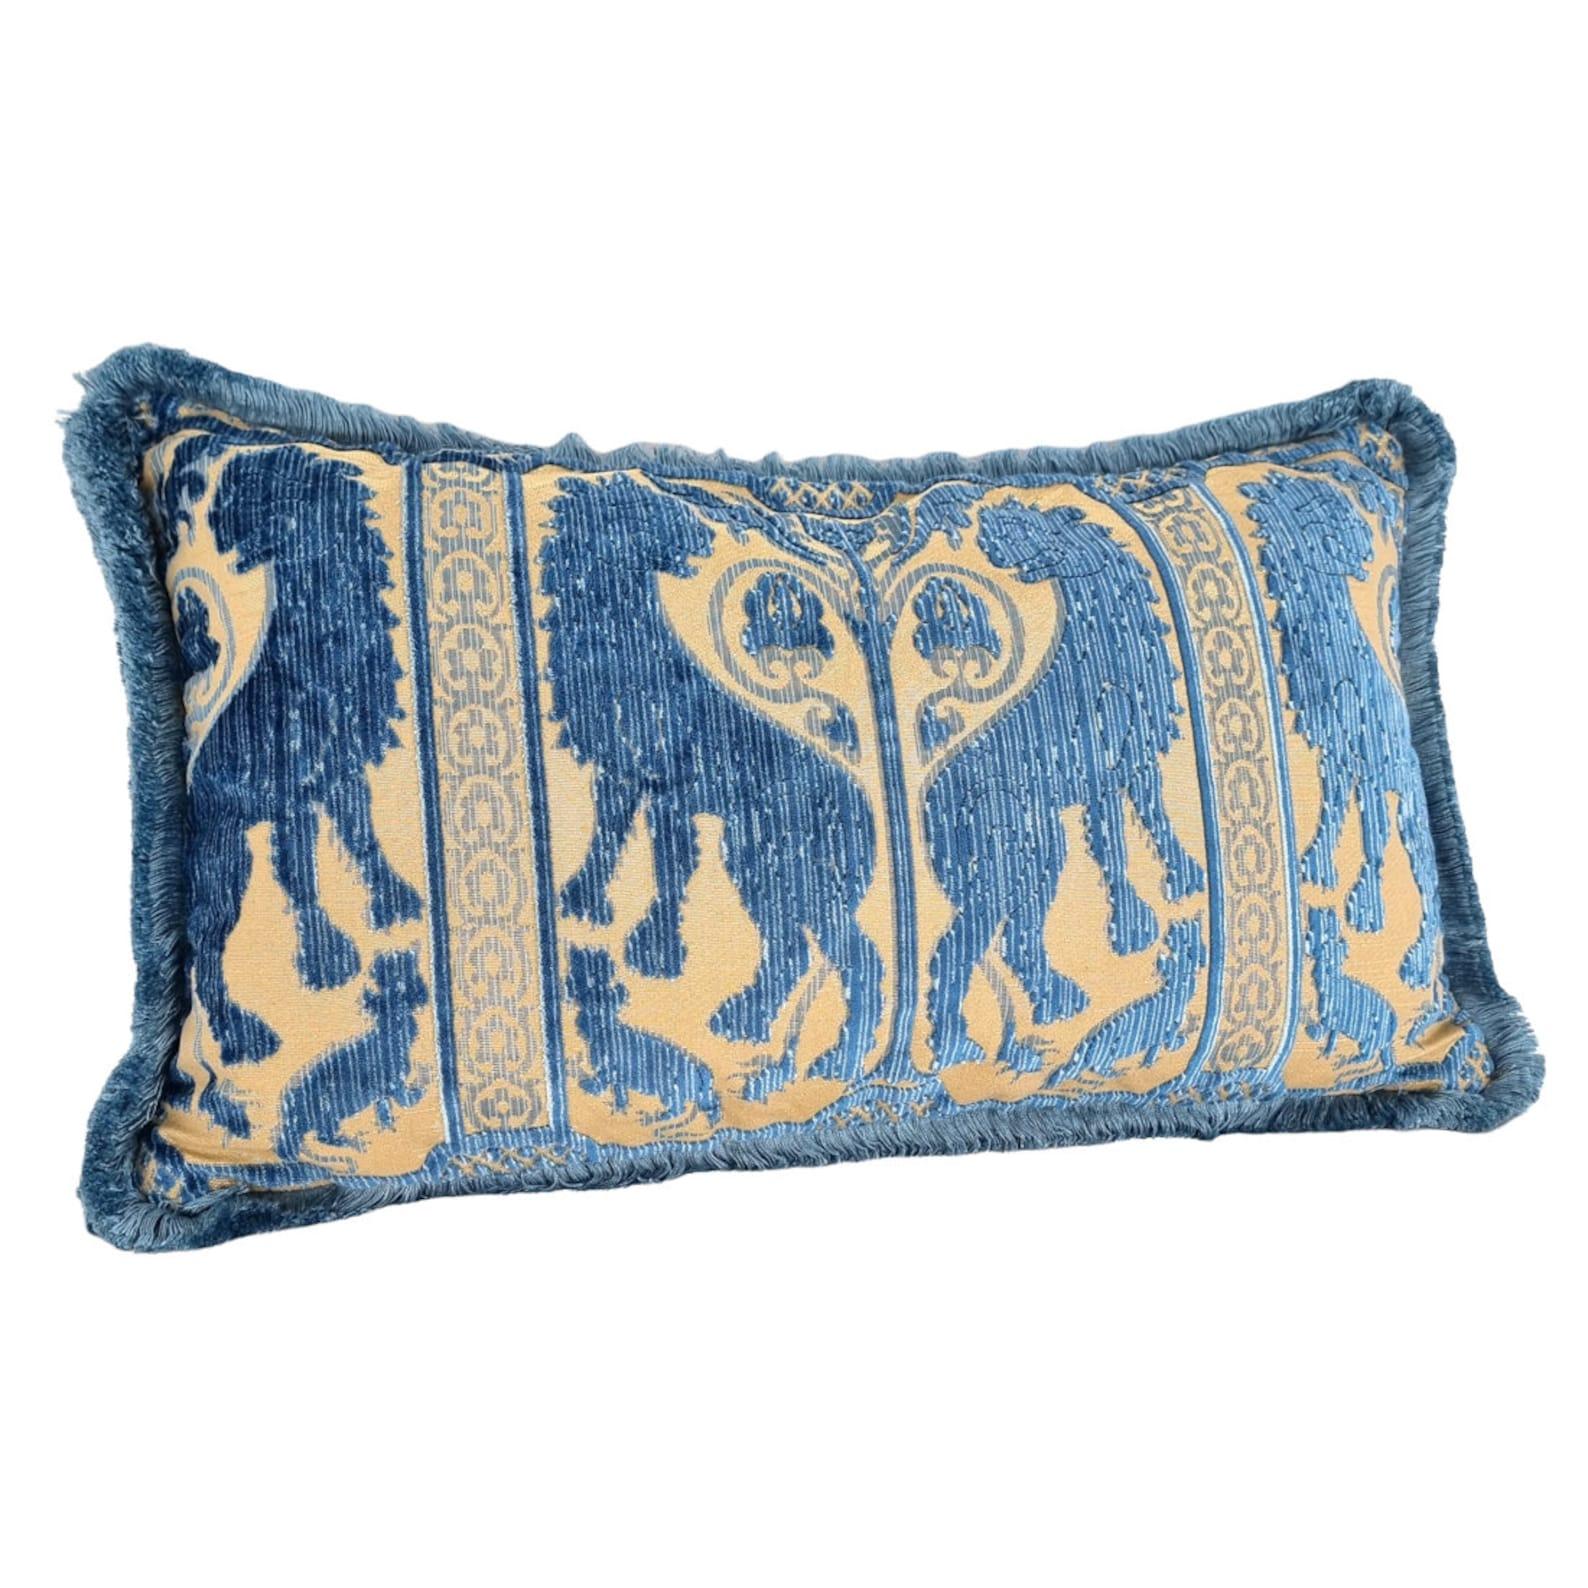 Ce magnifique coussin lombaire est fabriqué à la main à partir de l'emblématique velours de soie Leoni Bizantini - design des XIIe et XIVe siècles - de couleur bleu indigo provenant de Tessitura Luigi Bevilacqua, l'historique et prestigieuse